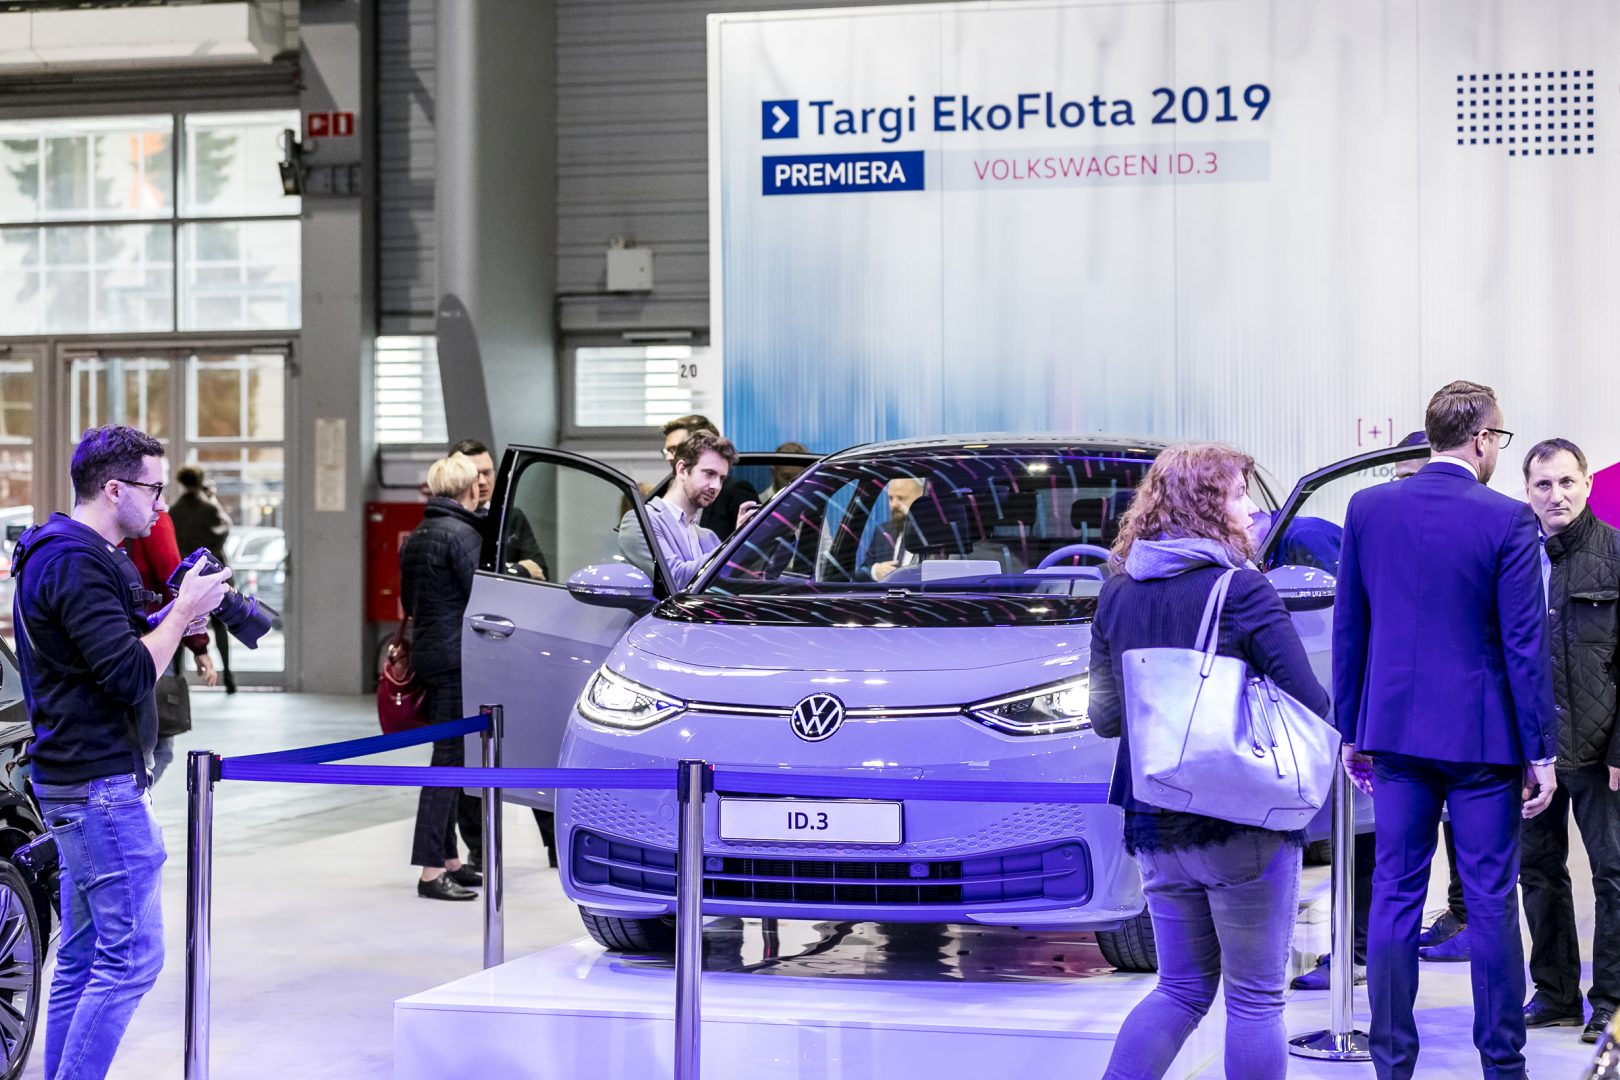 Fotografia targowa | Targi EkoFlota 2019 z Volkswagen Polska